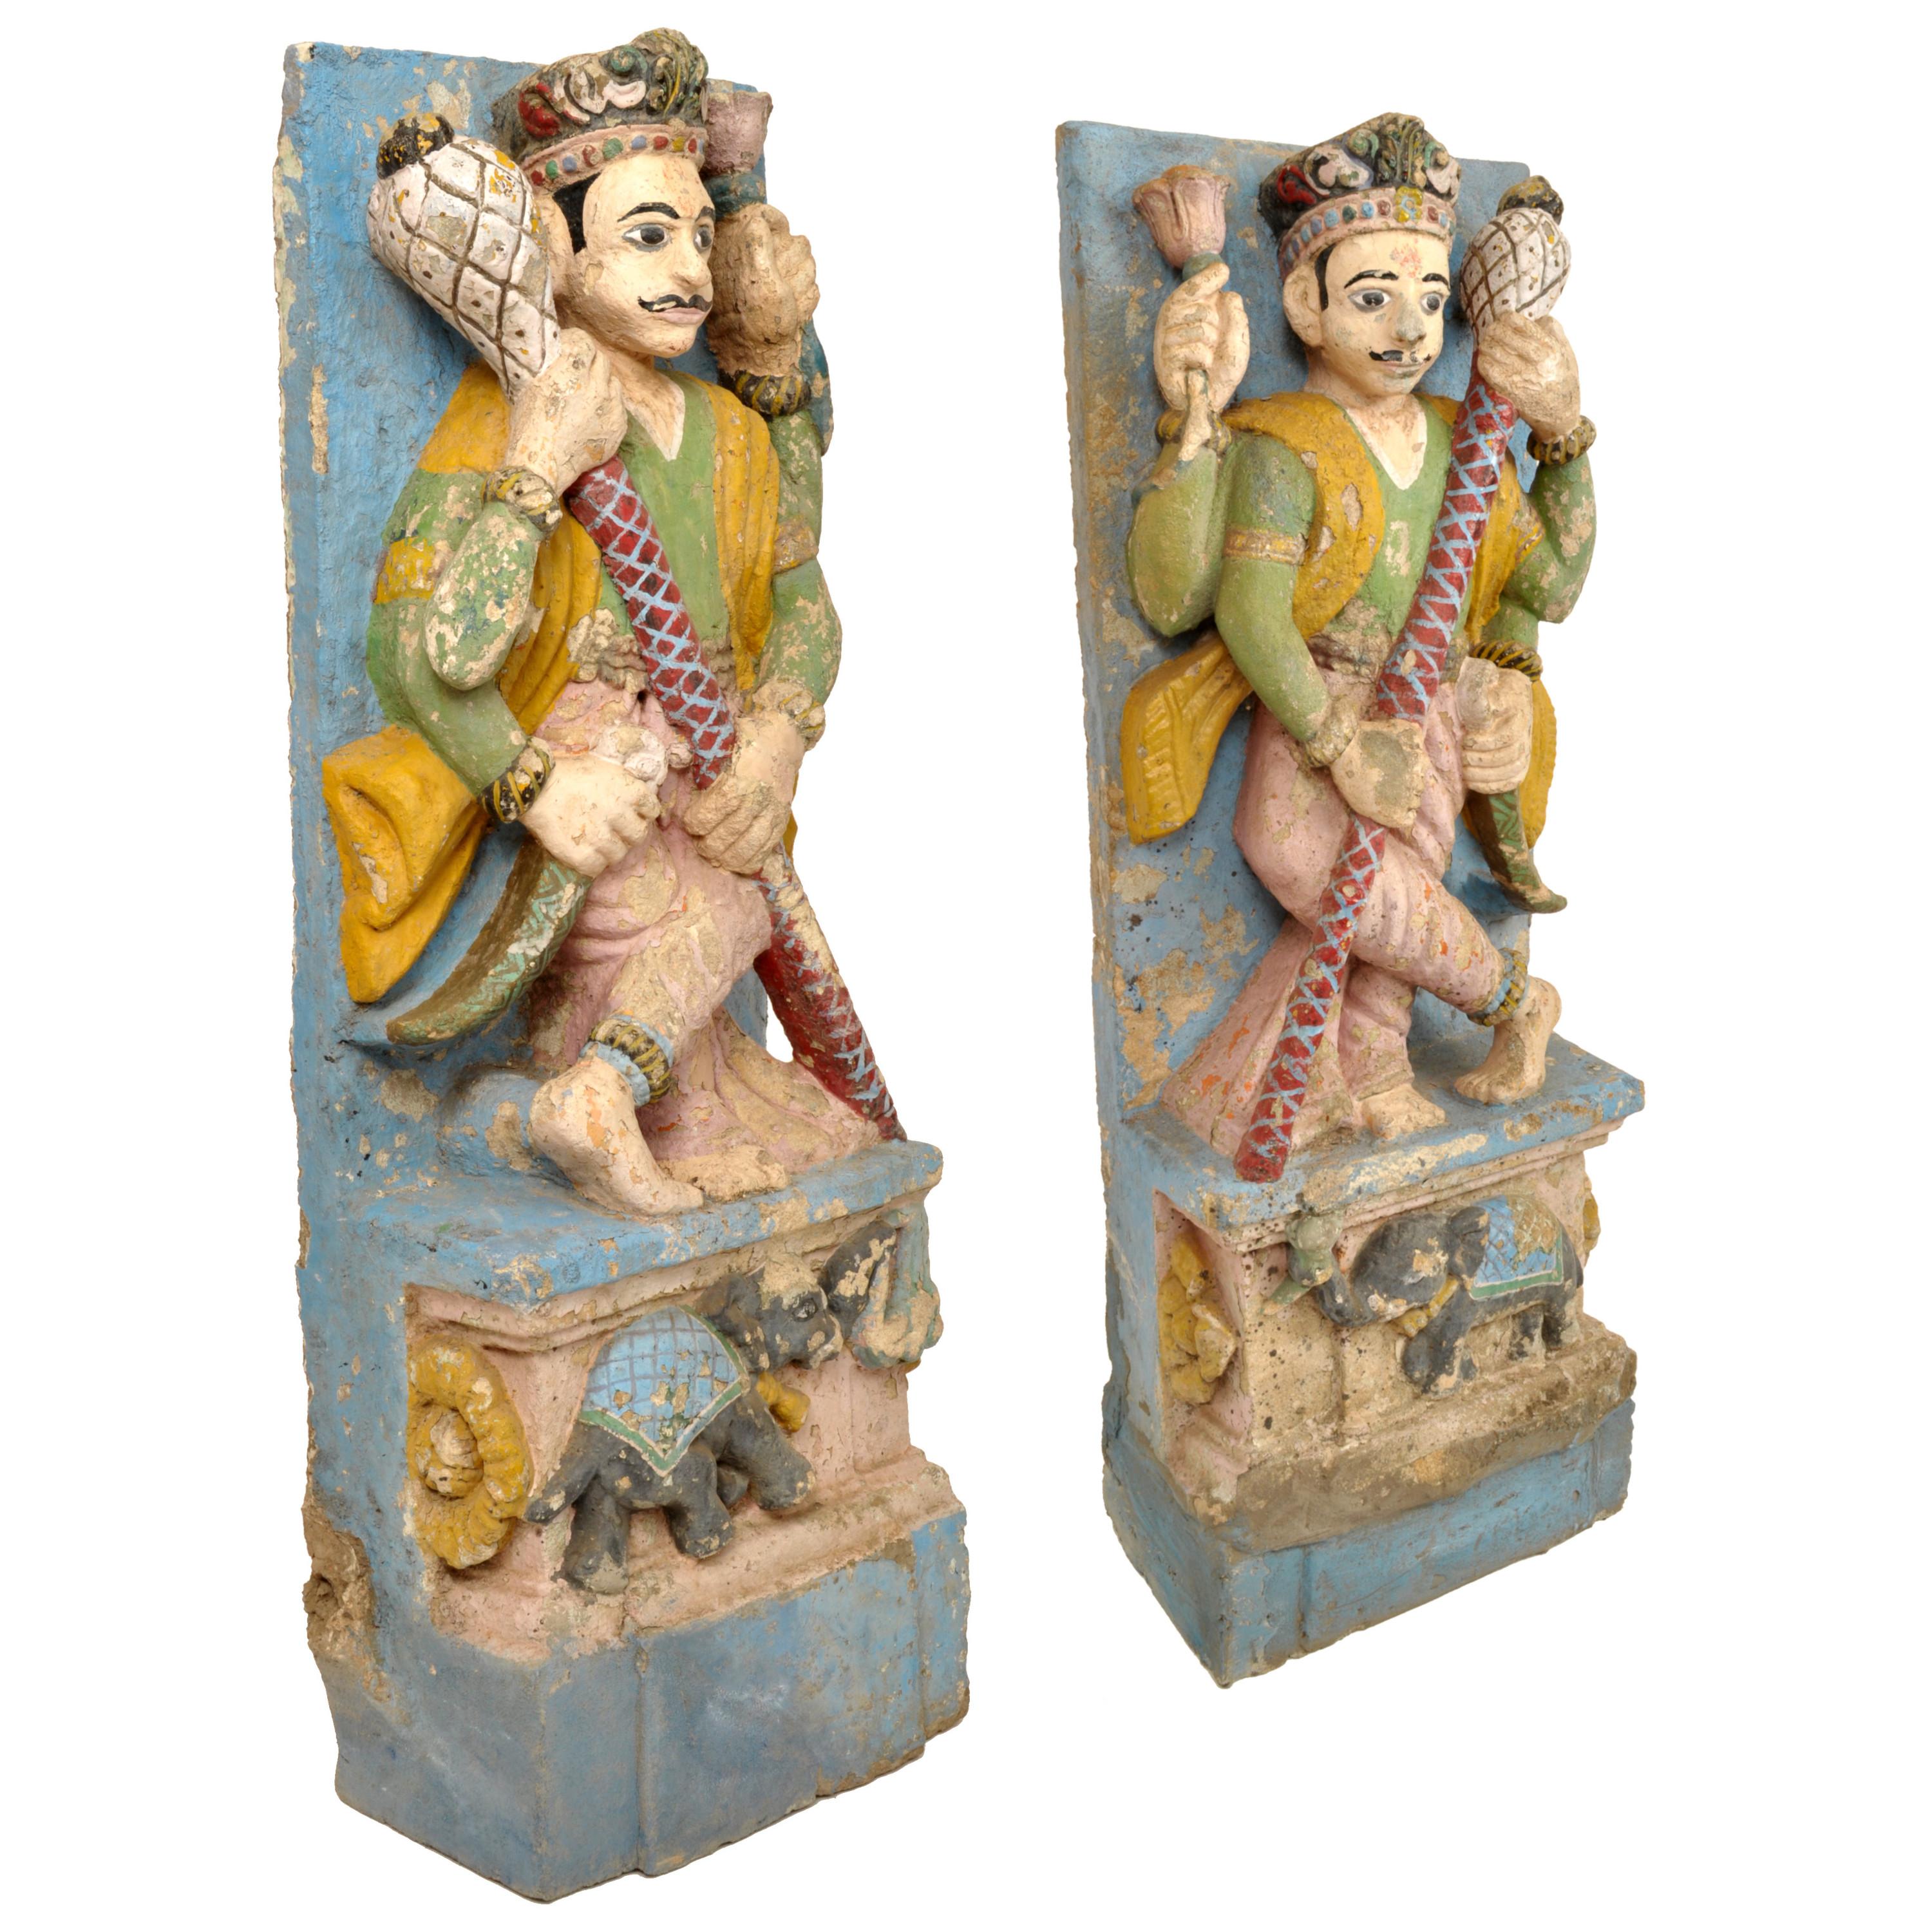 Ein großes und wichtiges Paar von seltenen antiken indischen polychromen und handgeschnitzten Dvarpala-Statuen (Tempeltürwächter) aus dem 19. Jahrhundert, um 1850. 

Jede Statue ist handgeschnitzt und stellt einen männlichen, vierarmigen